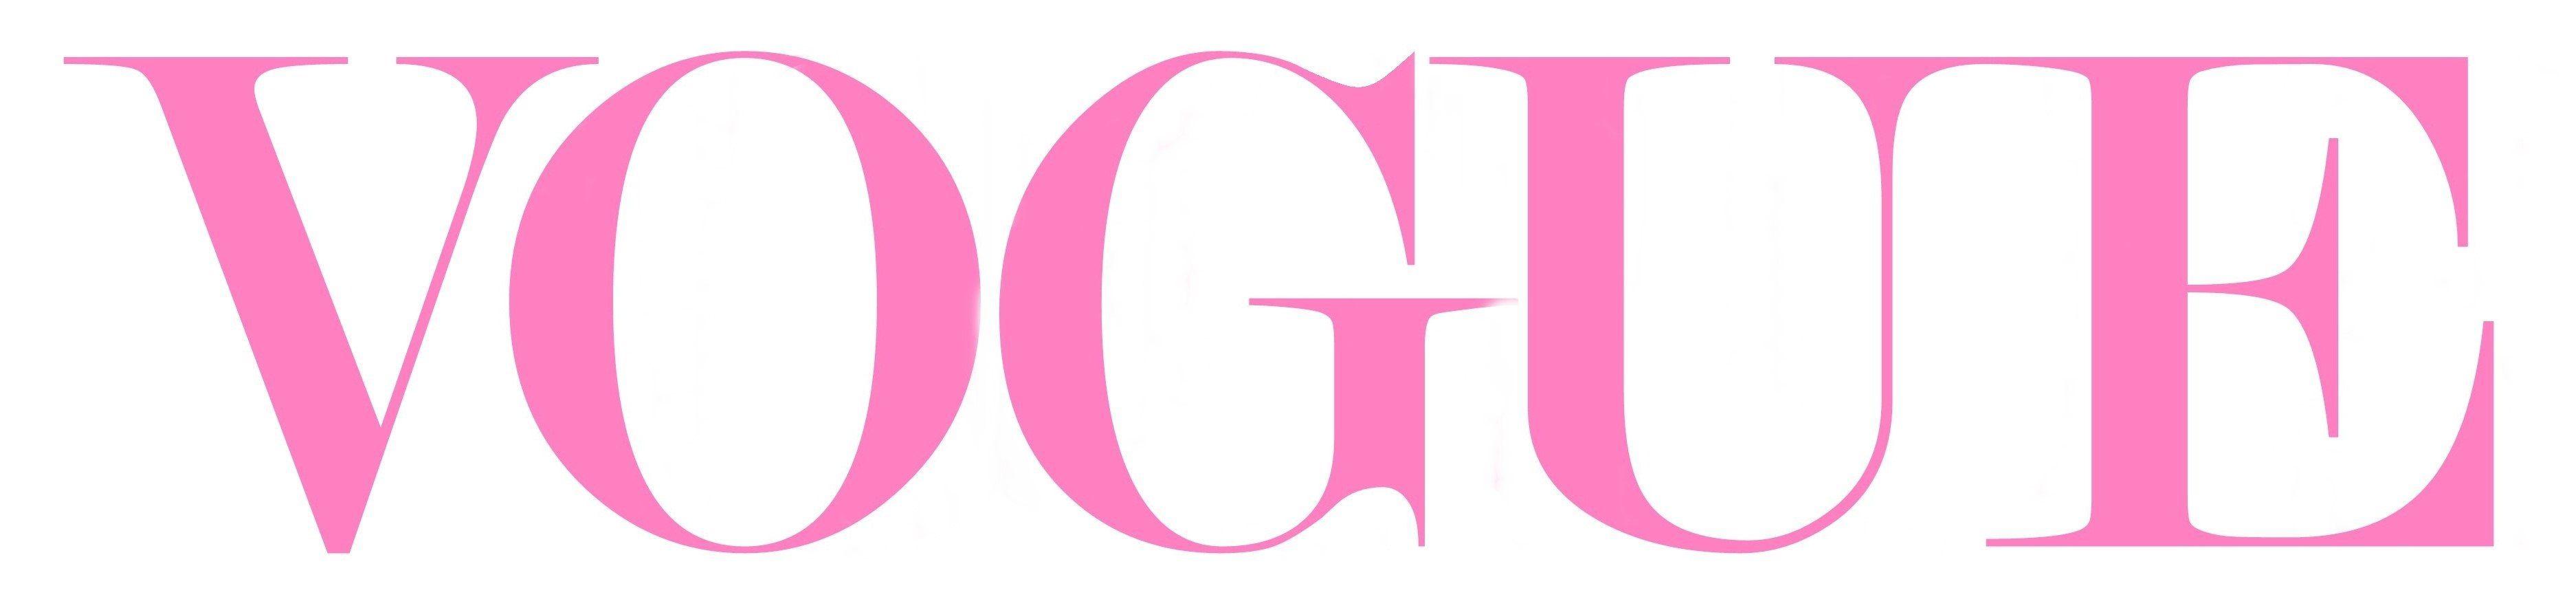 Vogue Logo - Vogue logo VirtueBrush - Virtuebrush